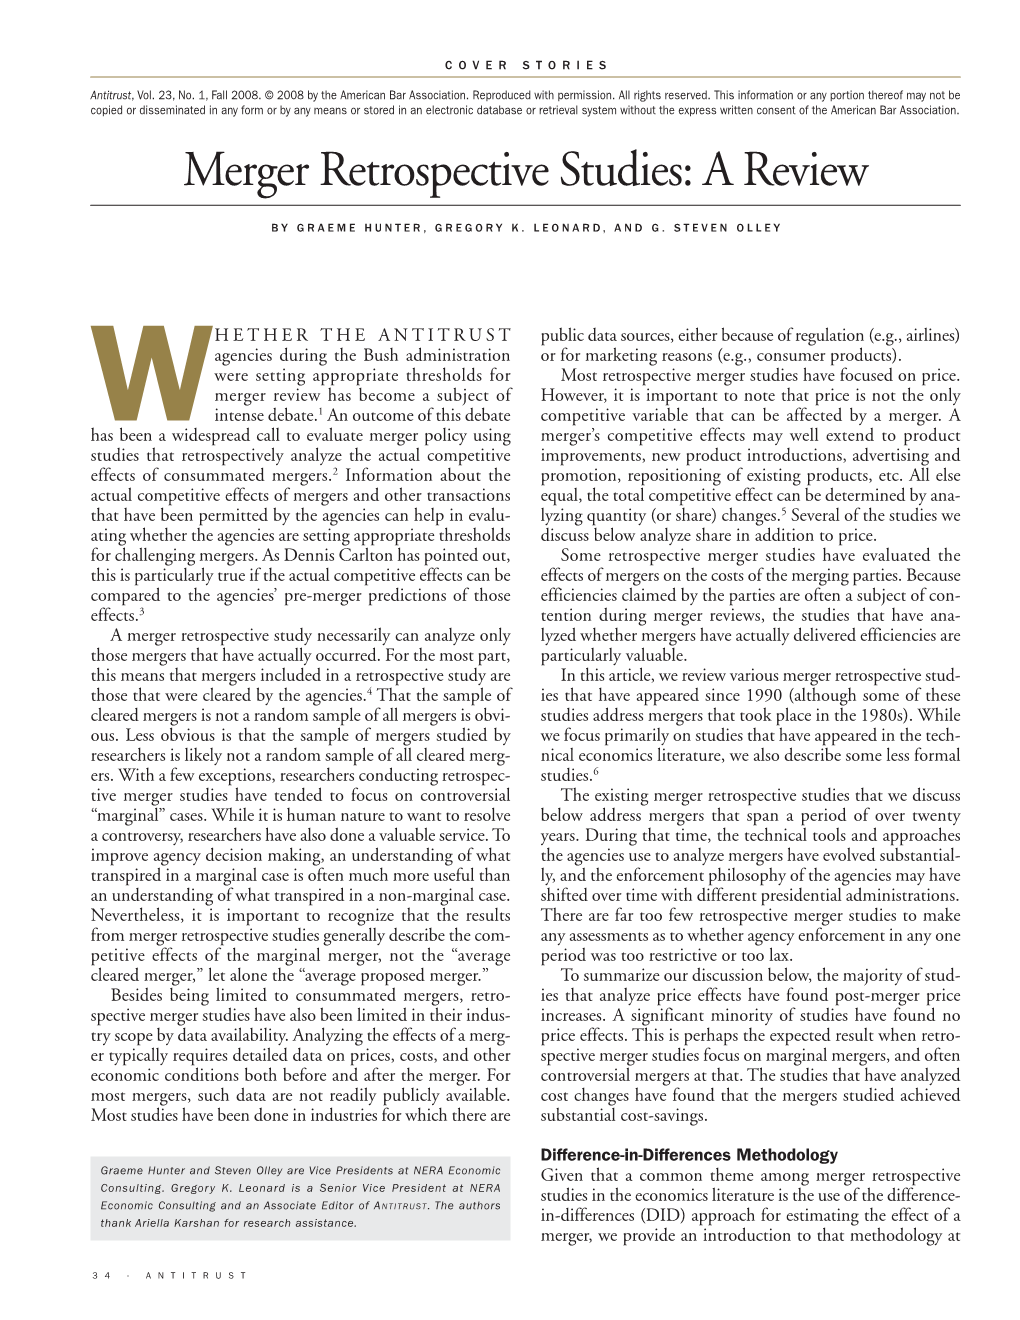 Merger Retrospective Studies: a Review